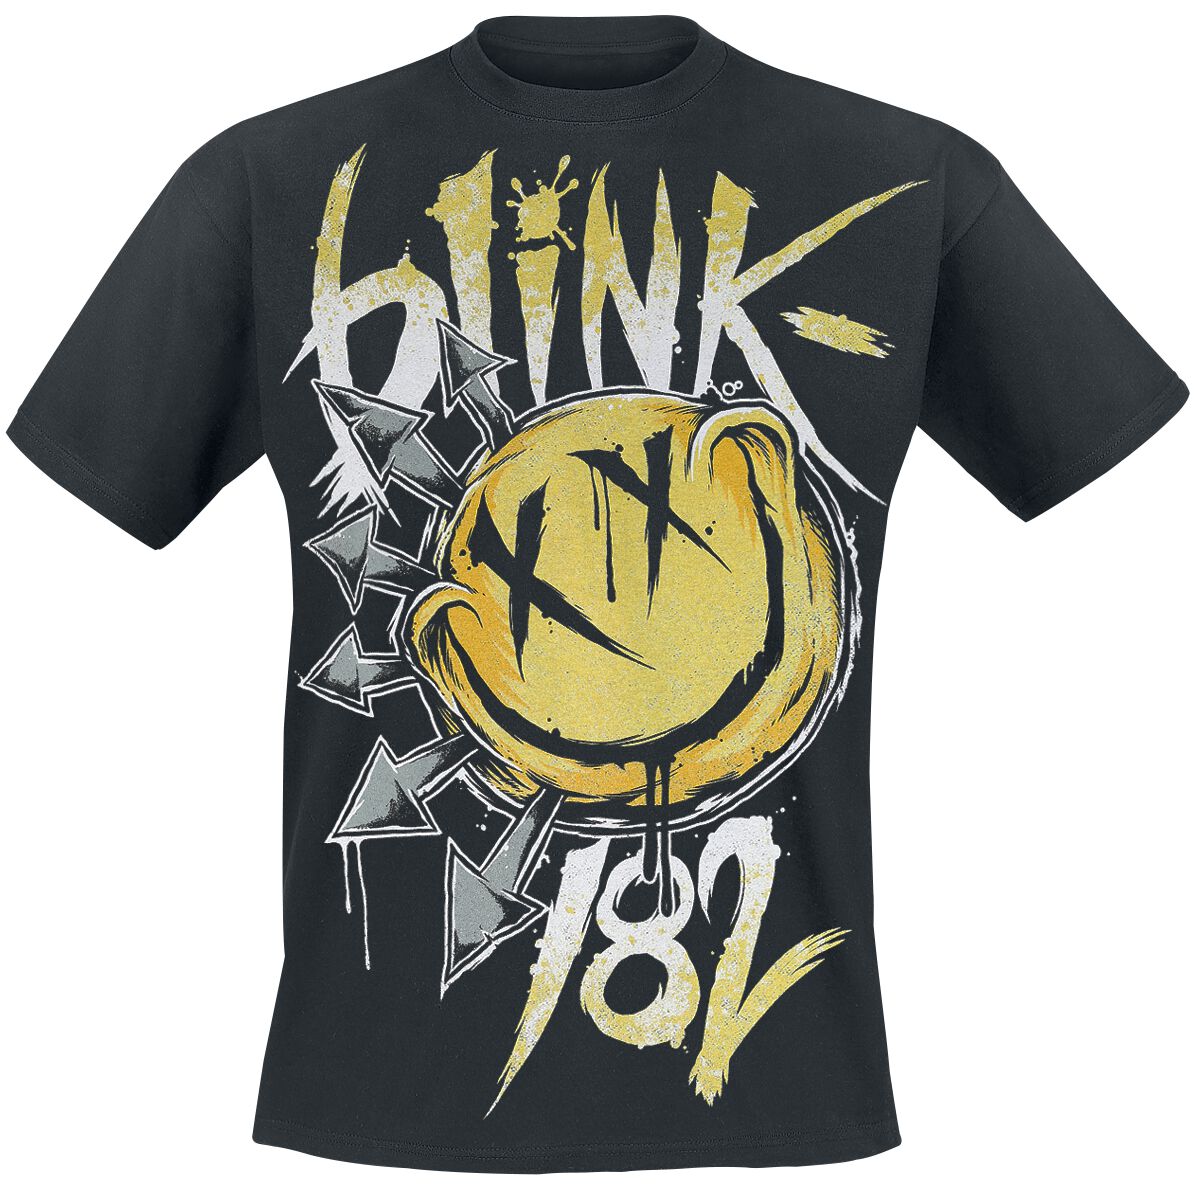 Blink-182 T-Shirt - Big Smile - S bis XXL - für Männer - Größe L - schwarz  - Lizenziertes Merchandise!